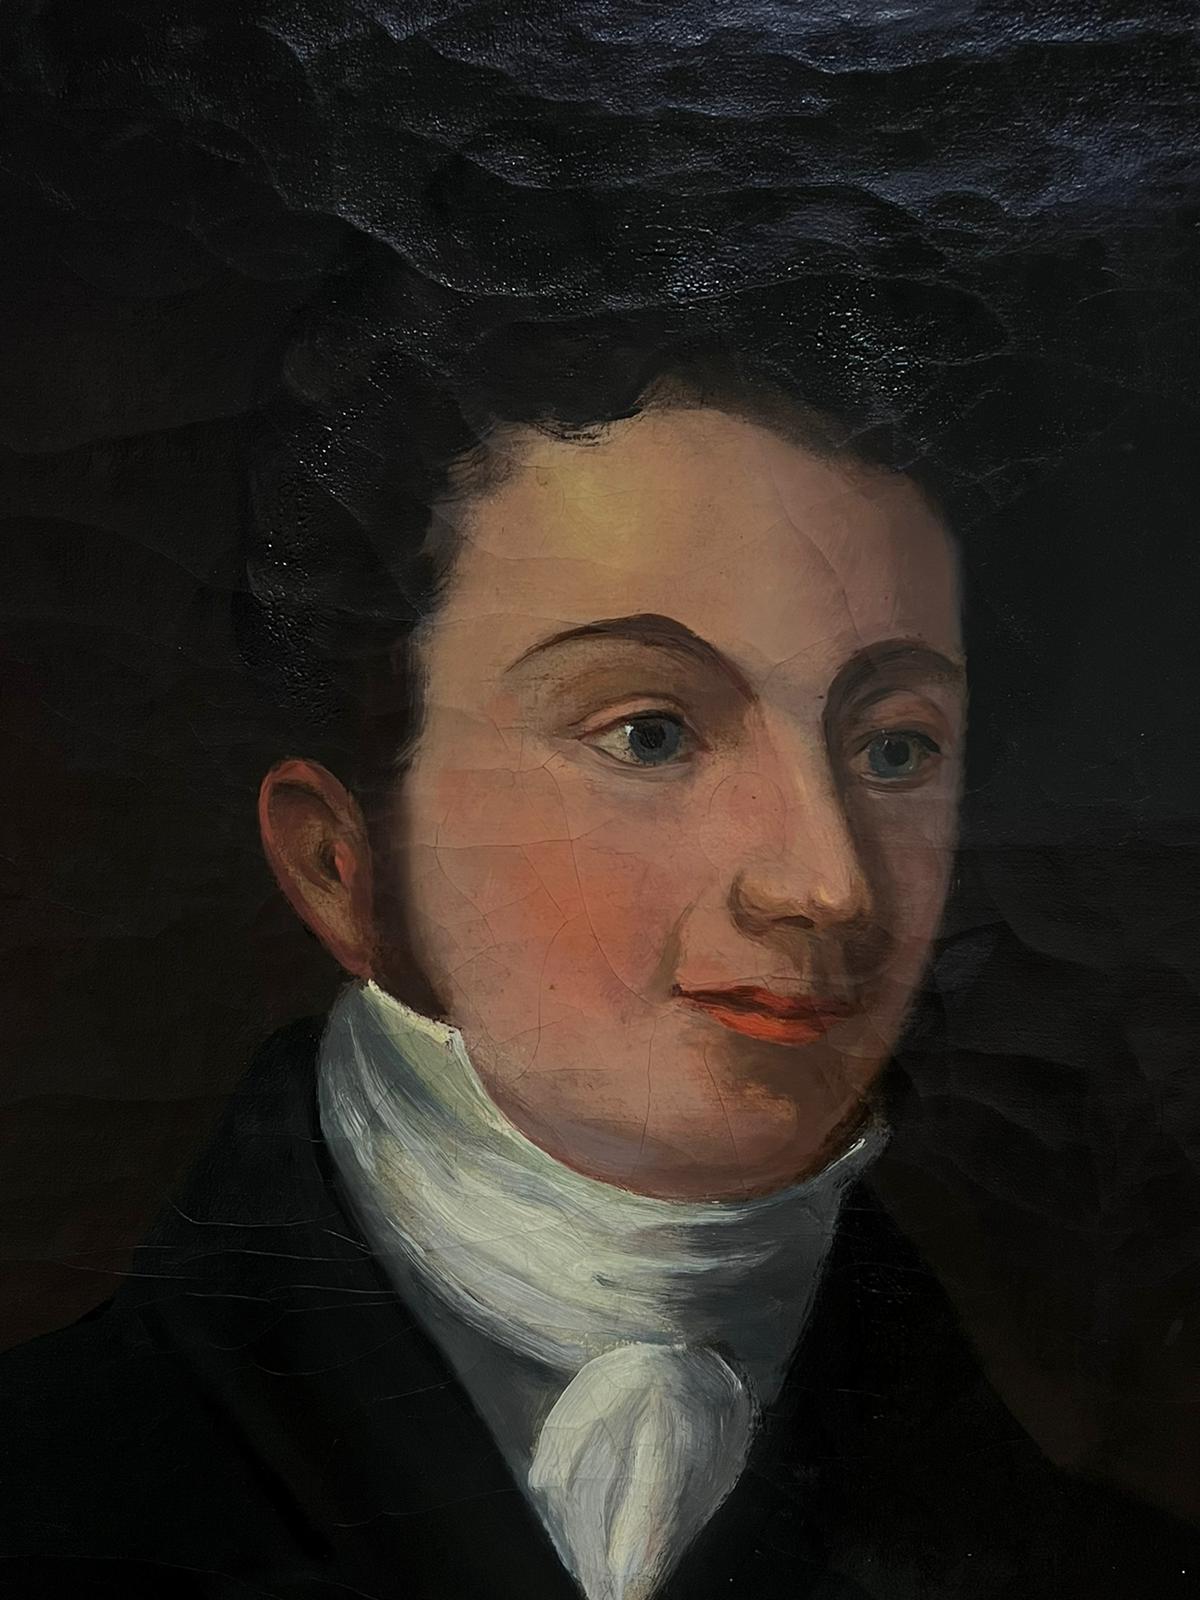 Sehr großes englisches Porträt, Dapper Young Gentleman Periode, Drama, Öl, 1820er Jahre (Viktorianisch), Painting, von English 1820's